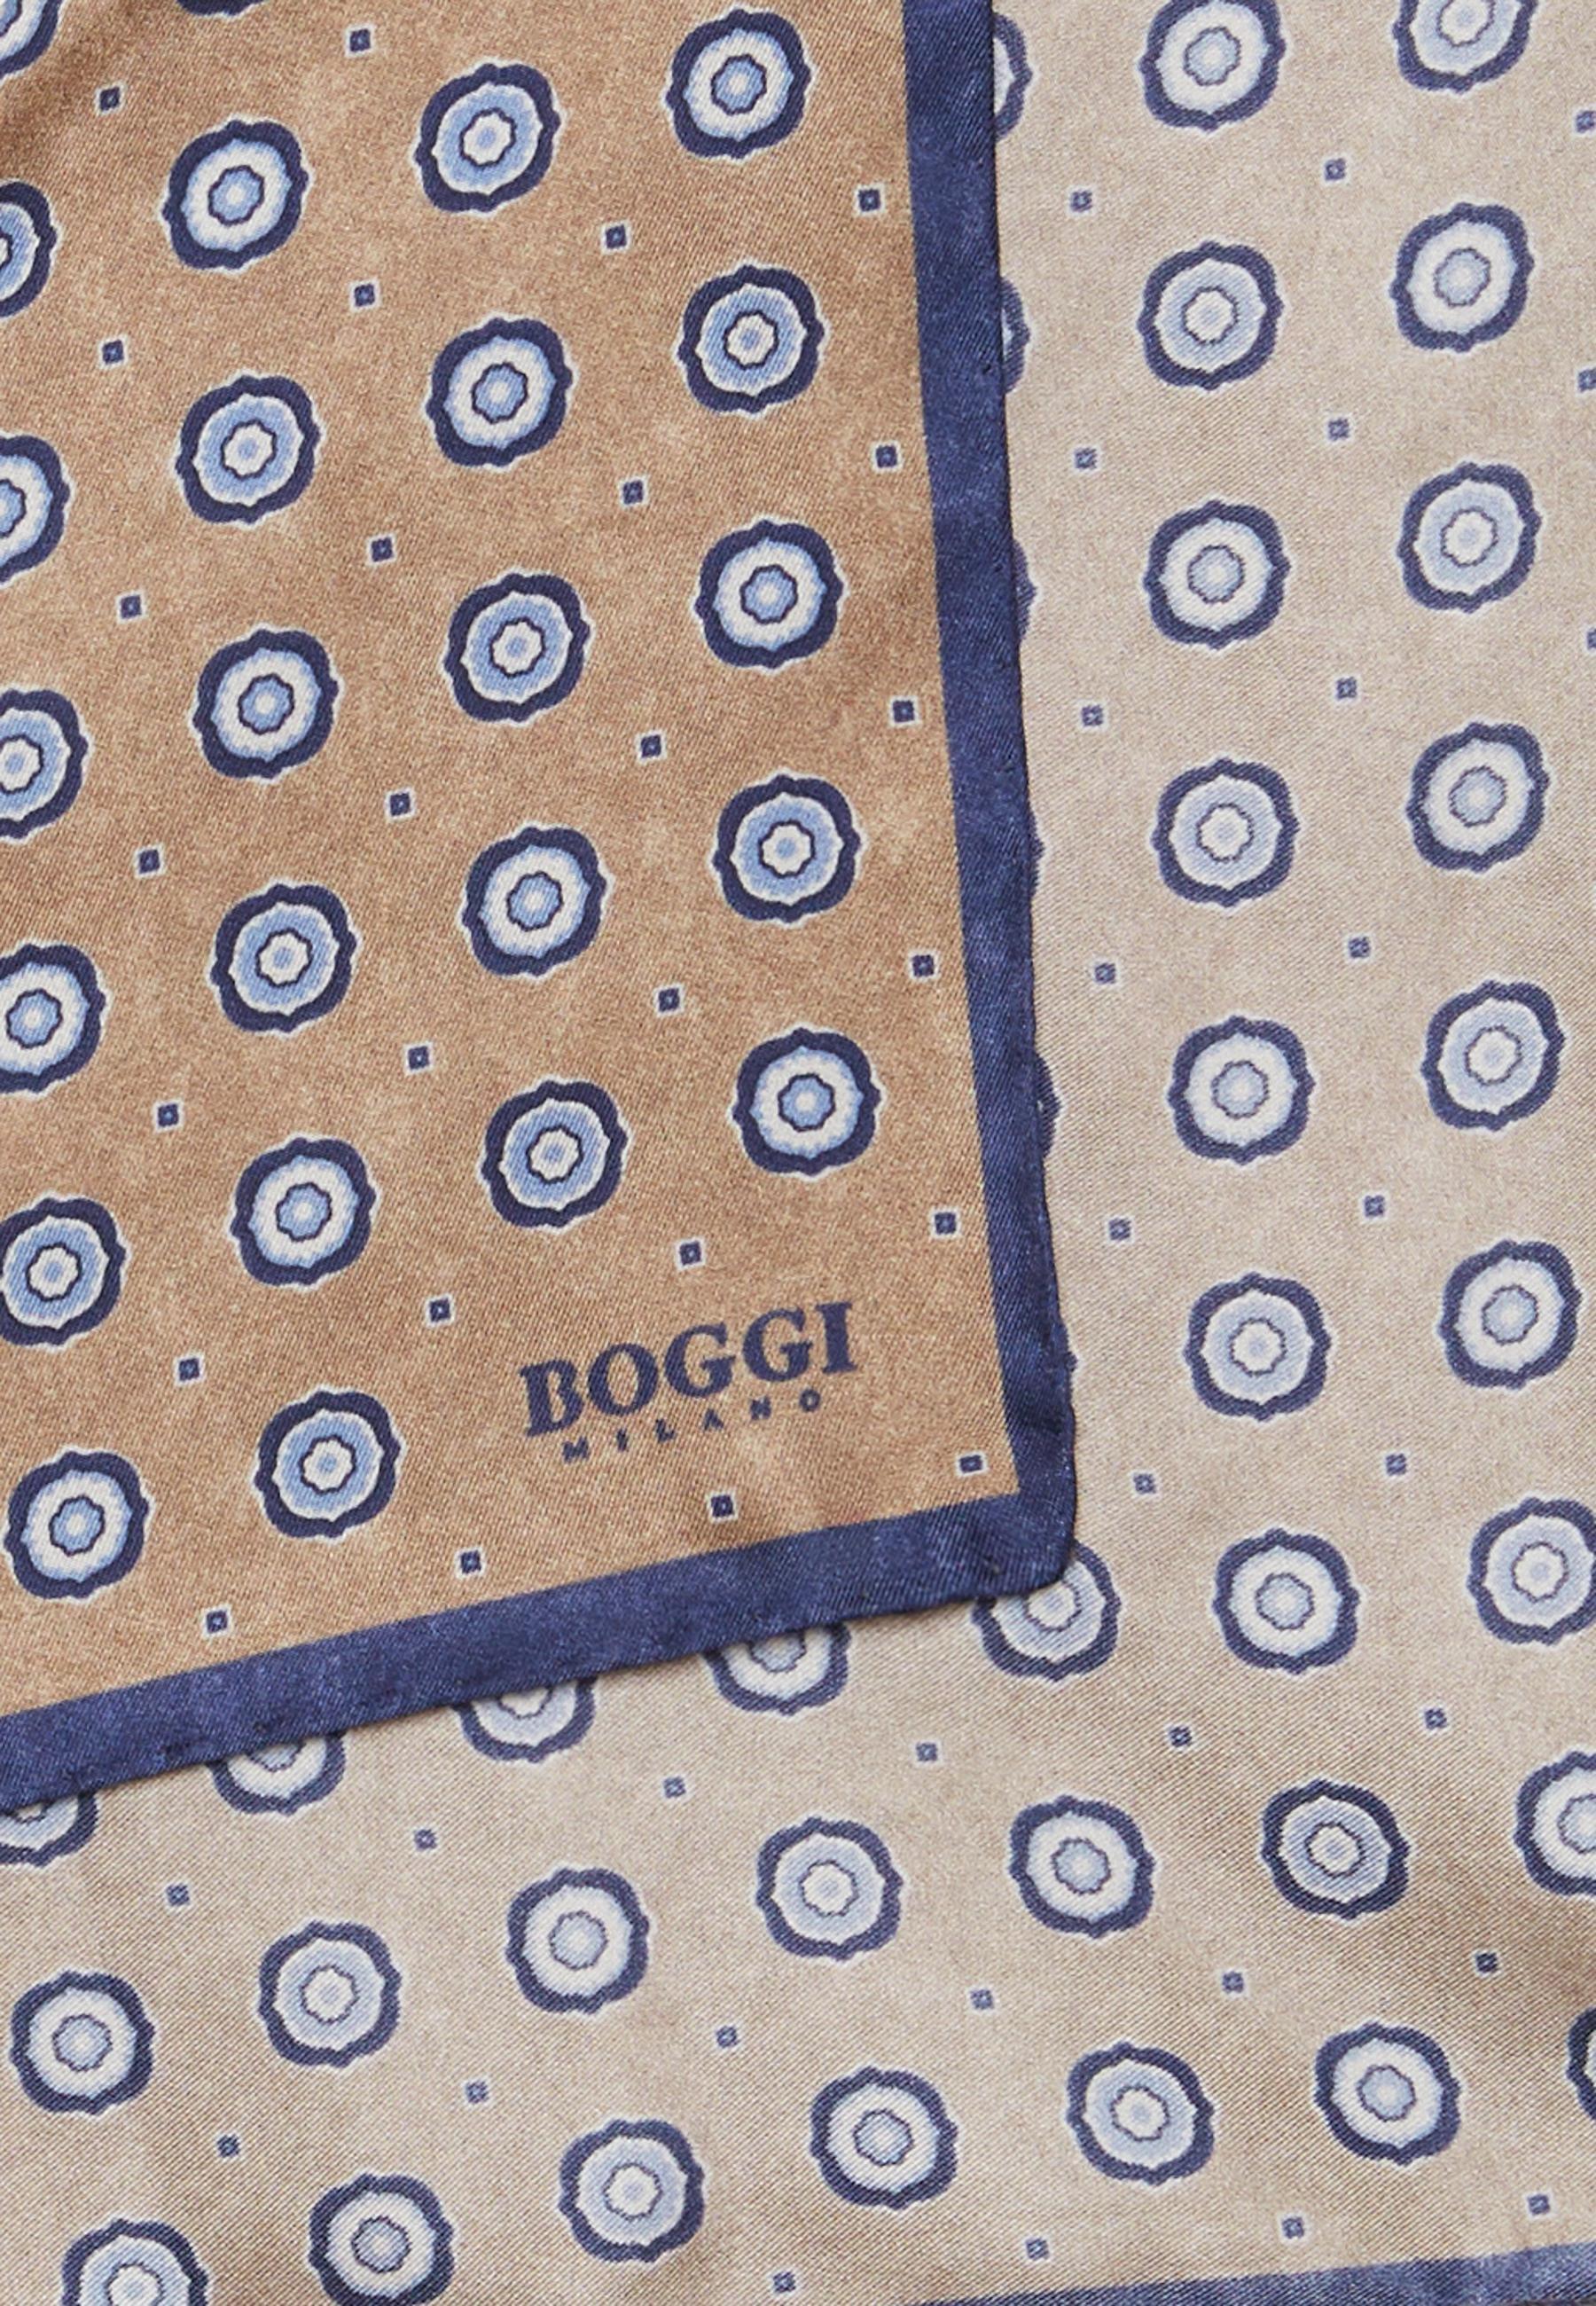 Boggi Milano - Beige Patterned Silk Pocket Square